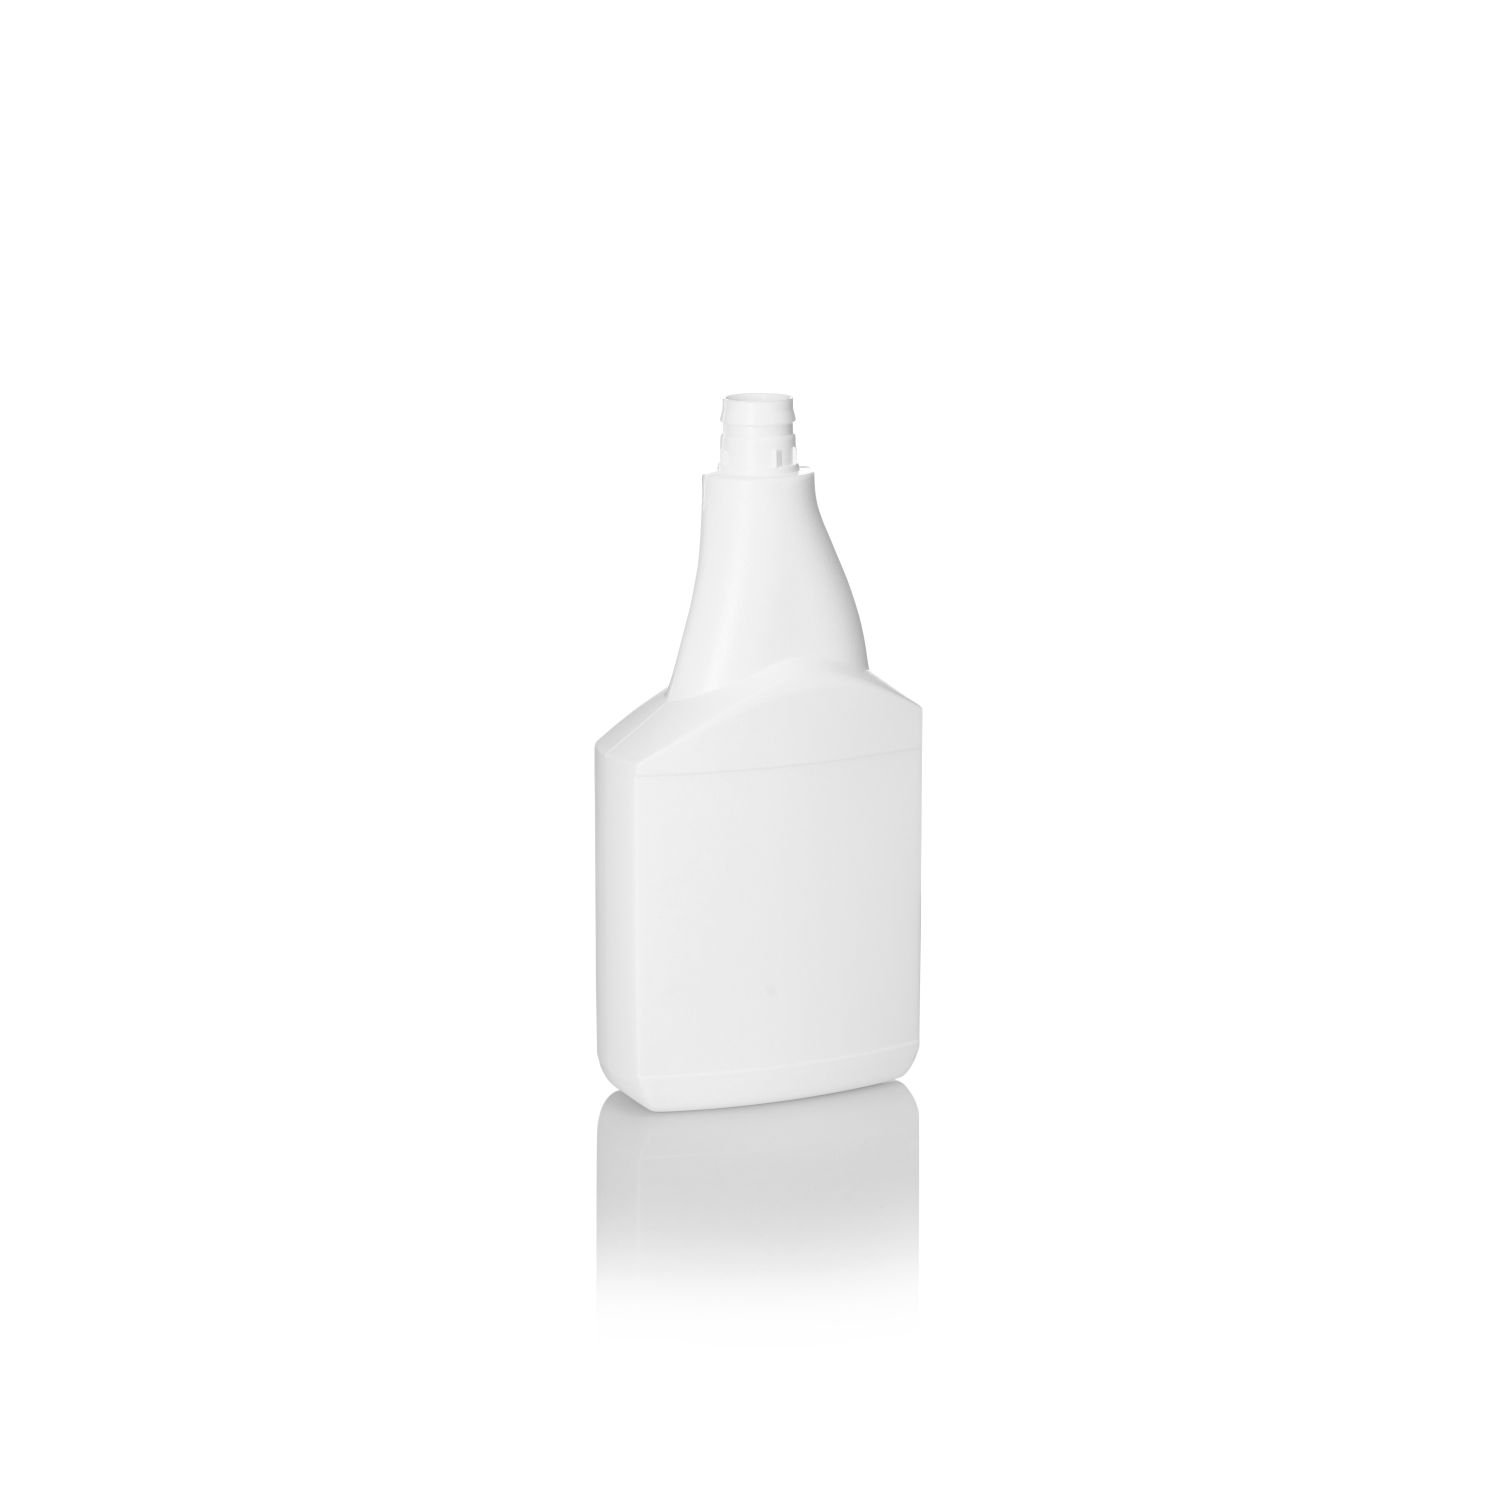 500ml White HDPE Rectangular Snap on Spray Bottle